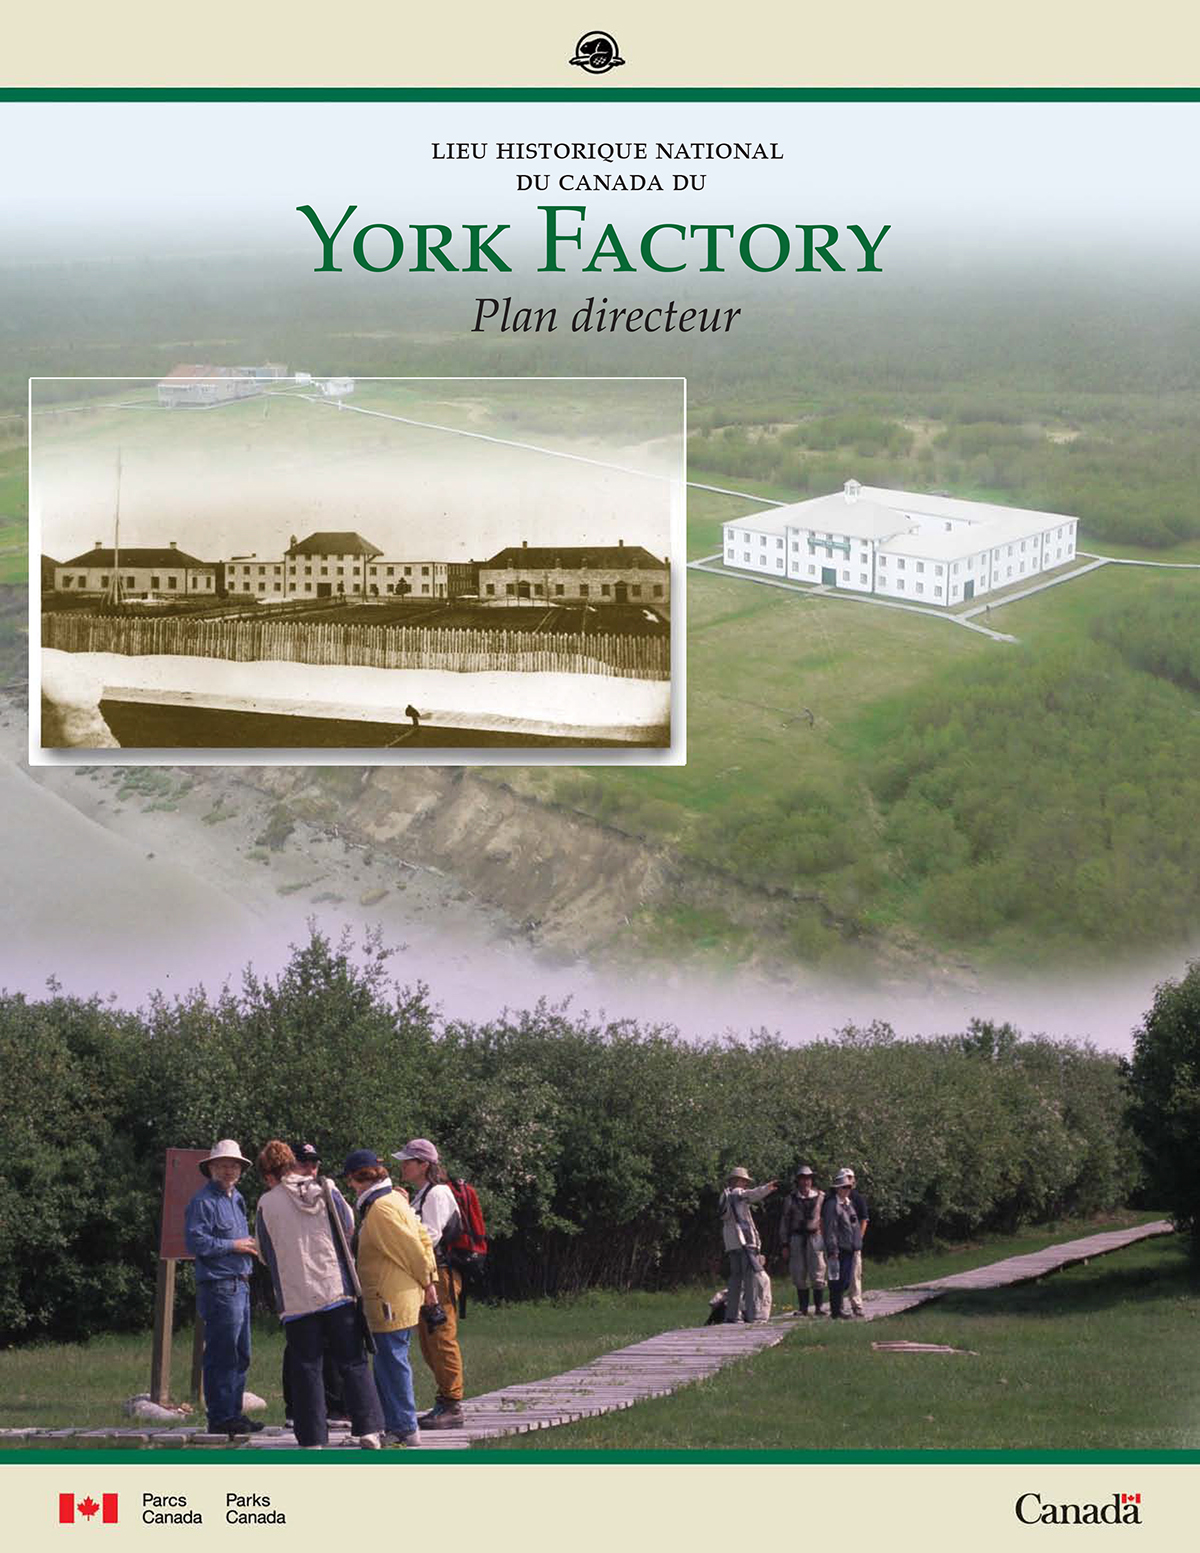 Lieu historique national du Canada du York Factory plan directeur